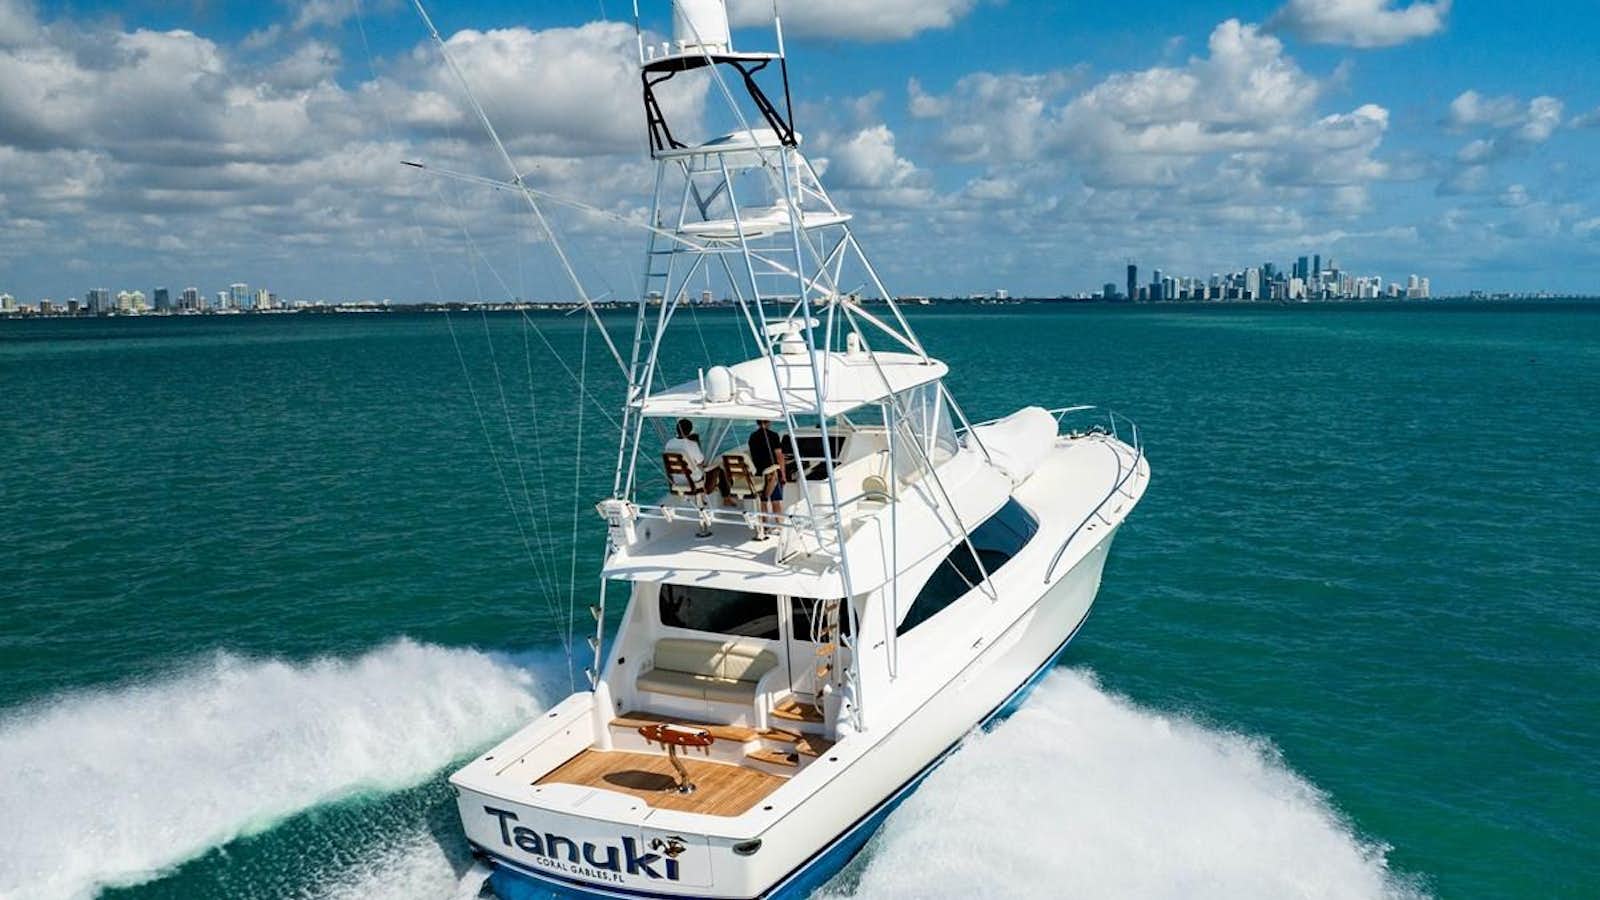 Tanuki
Yacht for Sale